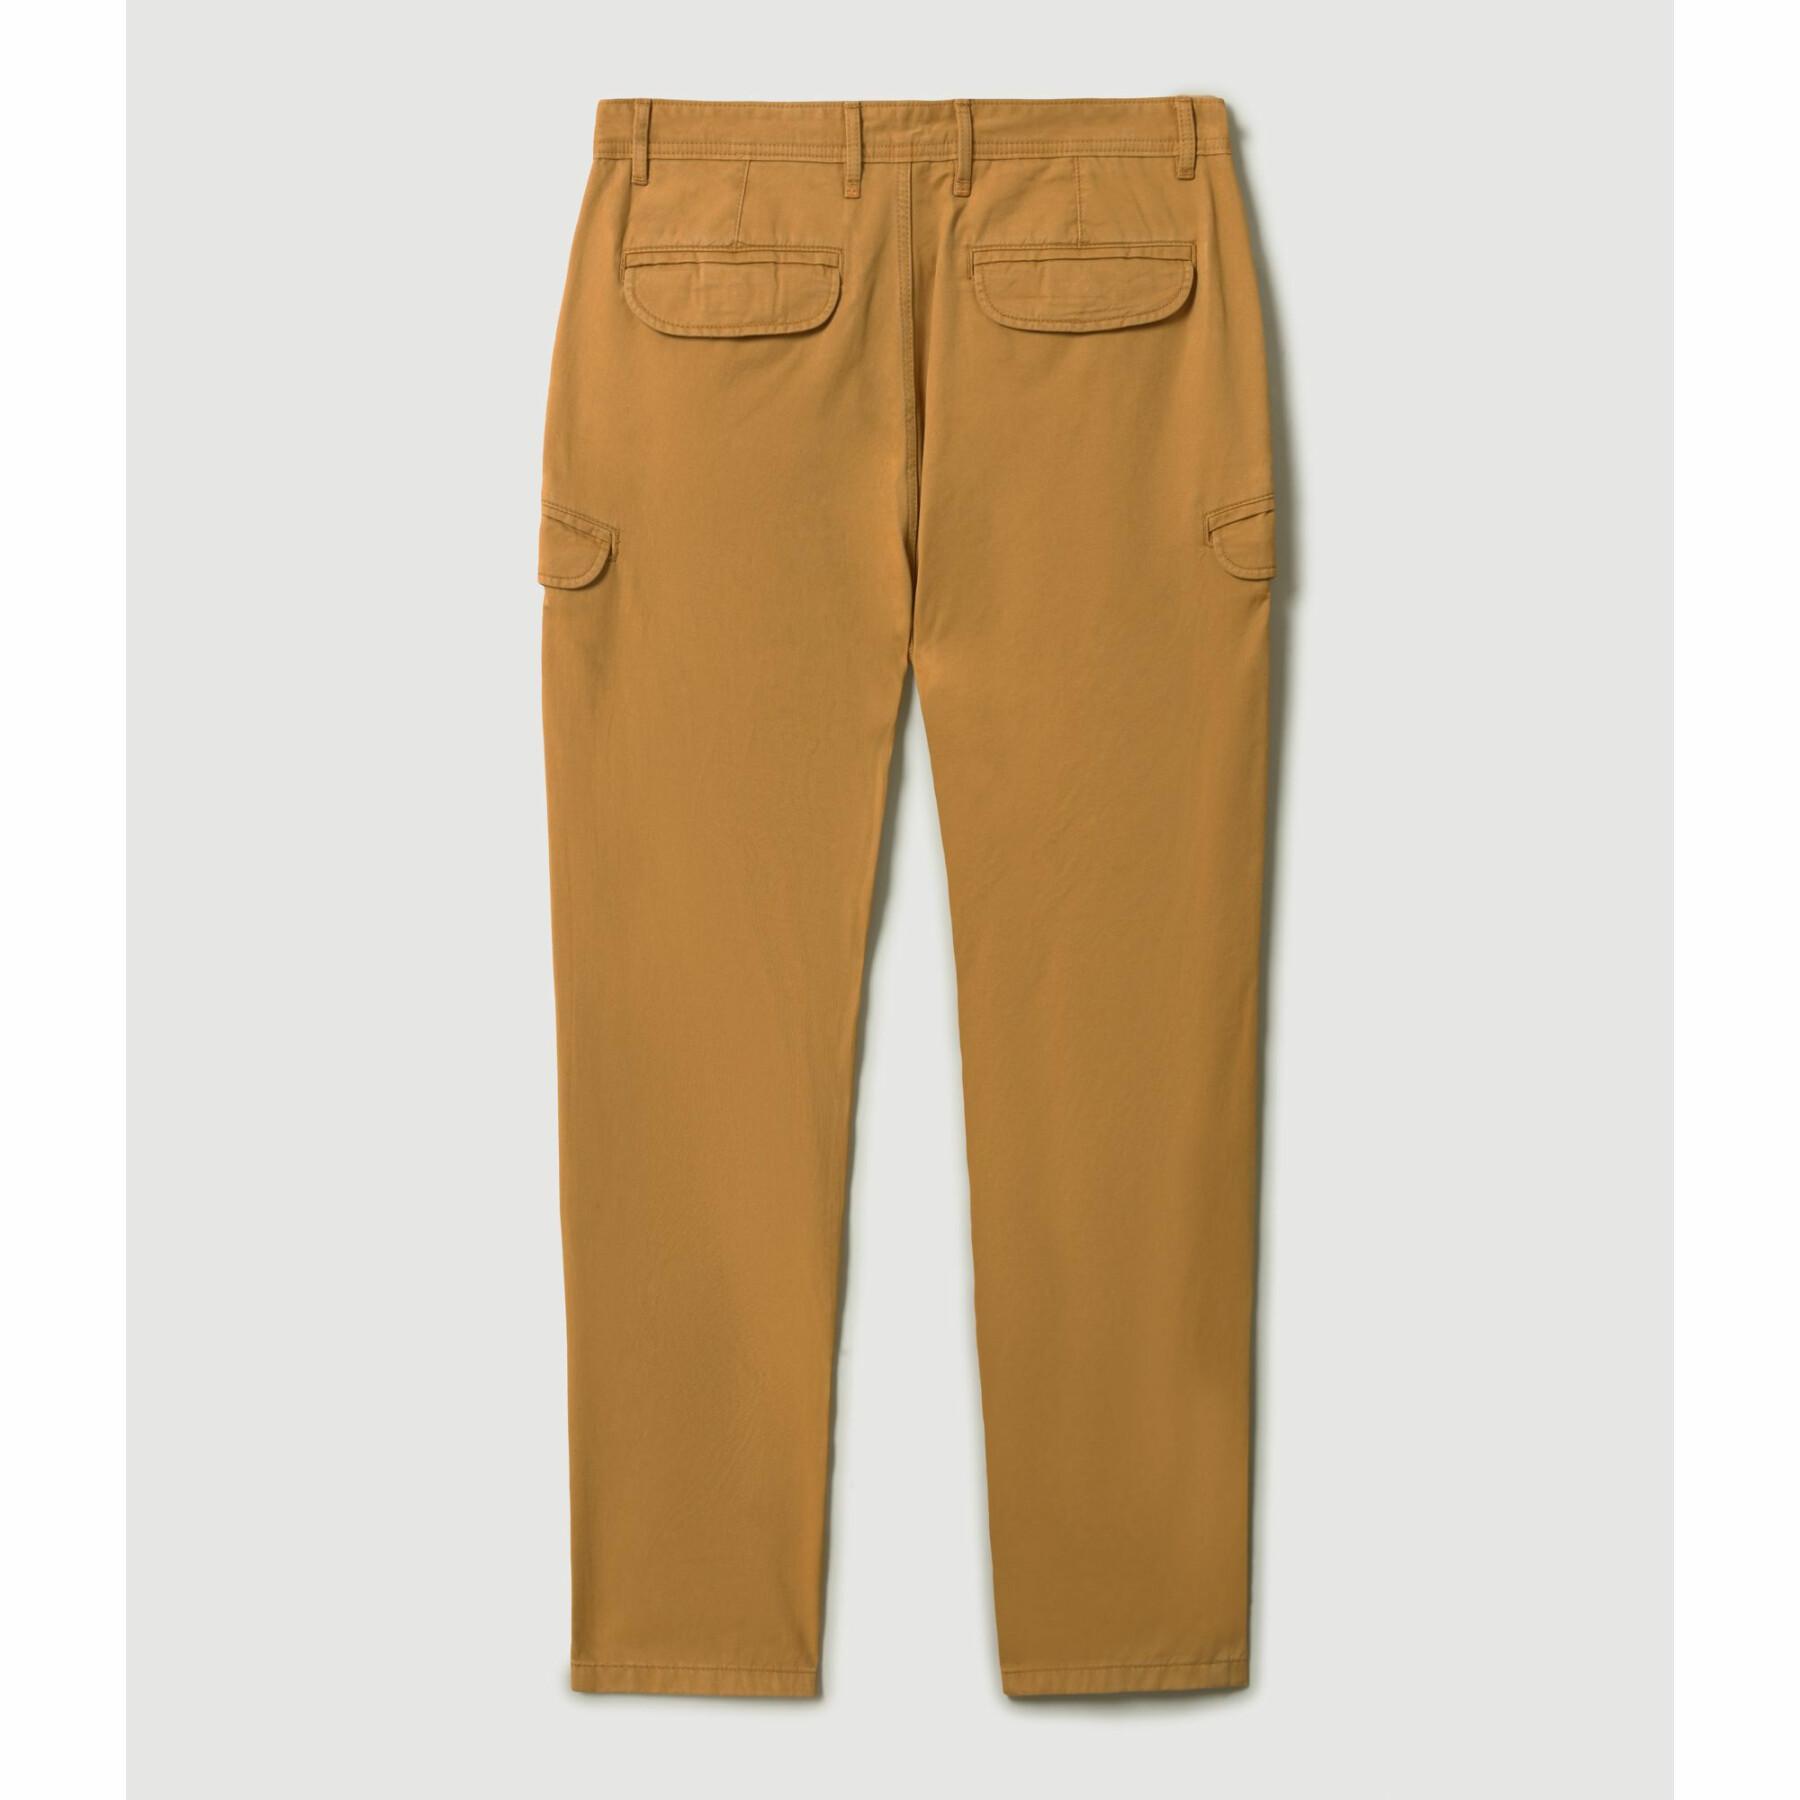 Pantalones cargo Napapijri mono